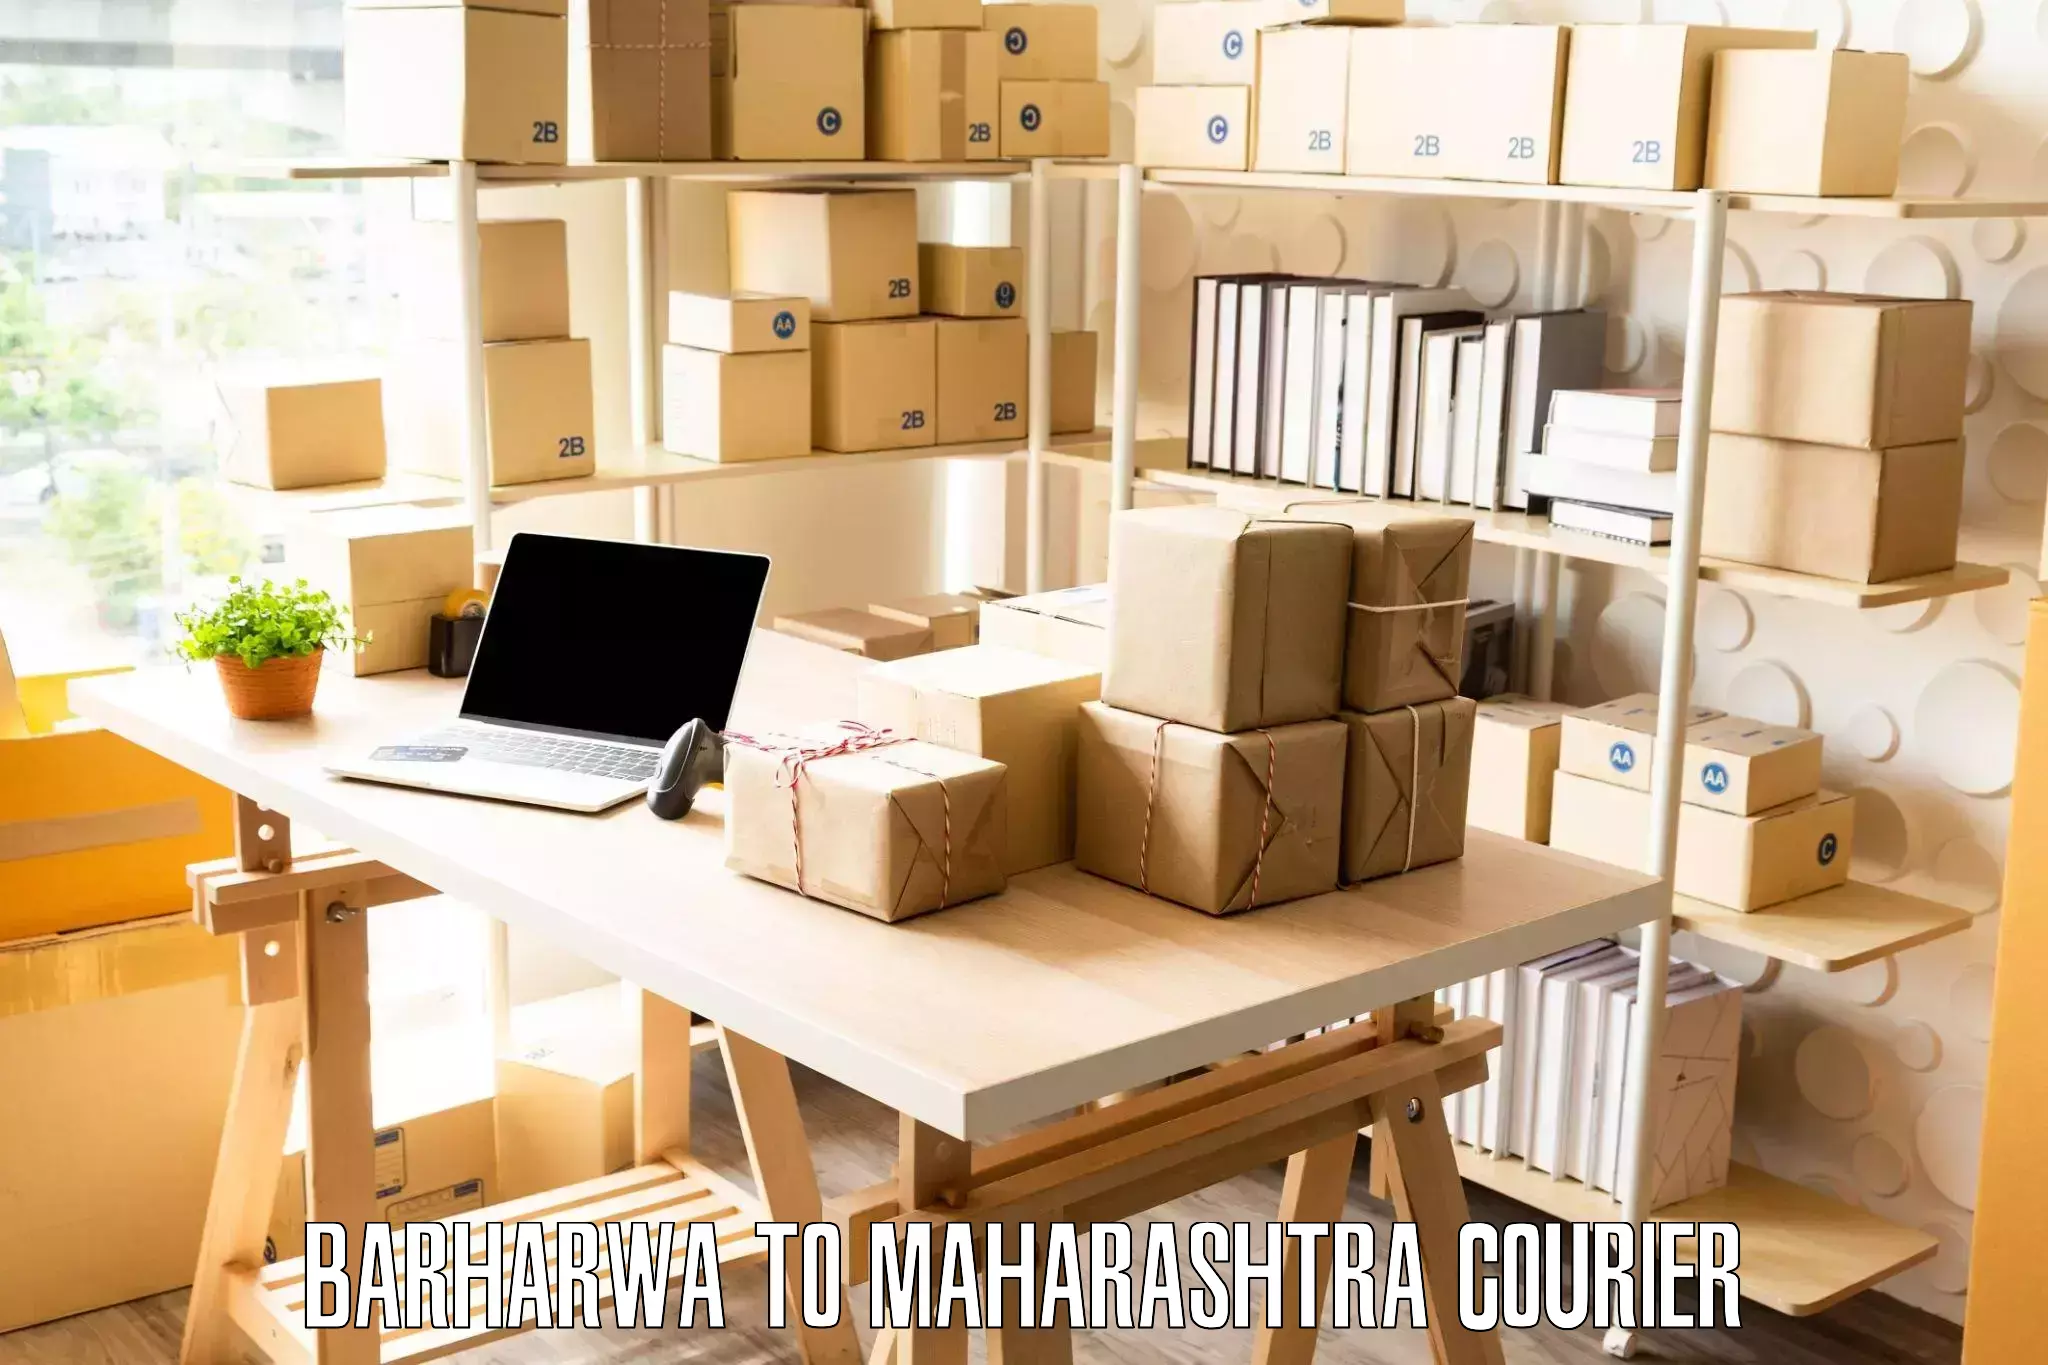 Seamless moving process Barharwa to Maharashtra